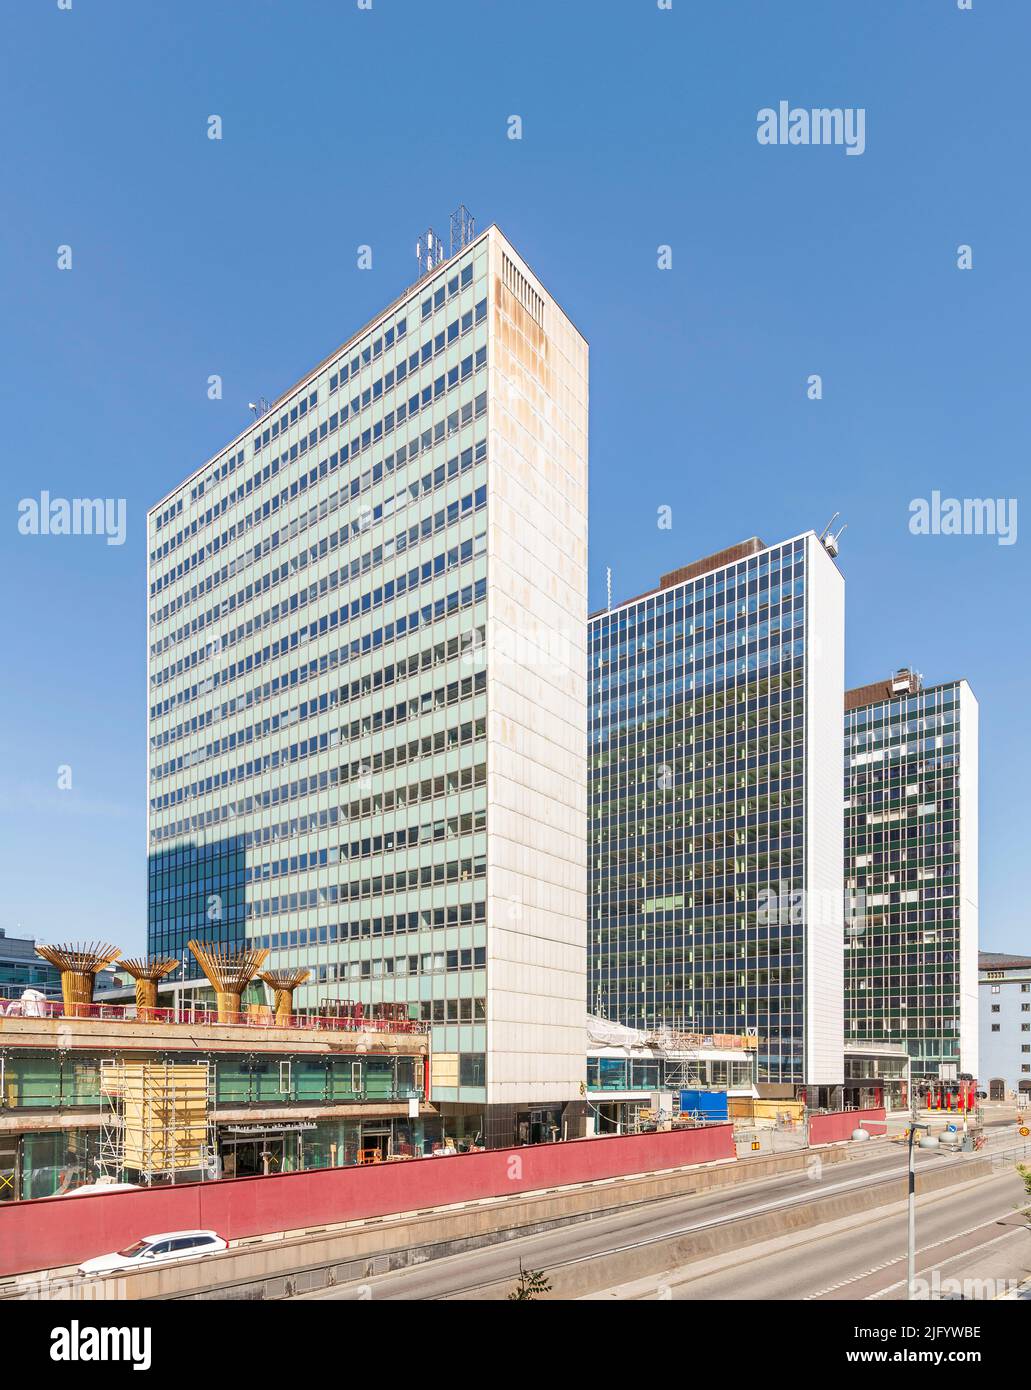 Hotorget Buildings, o Hotorgshusen, una serie de cinco edificios de oficinas de vidrio en Estocolmo, Suecia, ubicados en el distrito central de Norrmalm, entre las plazas Hotorget y Sergels Torg Foto de stock